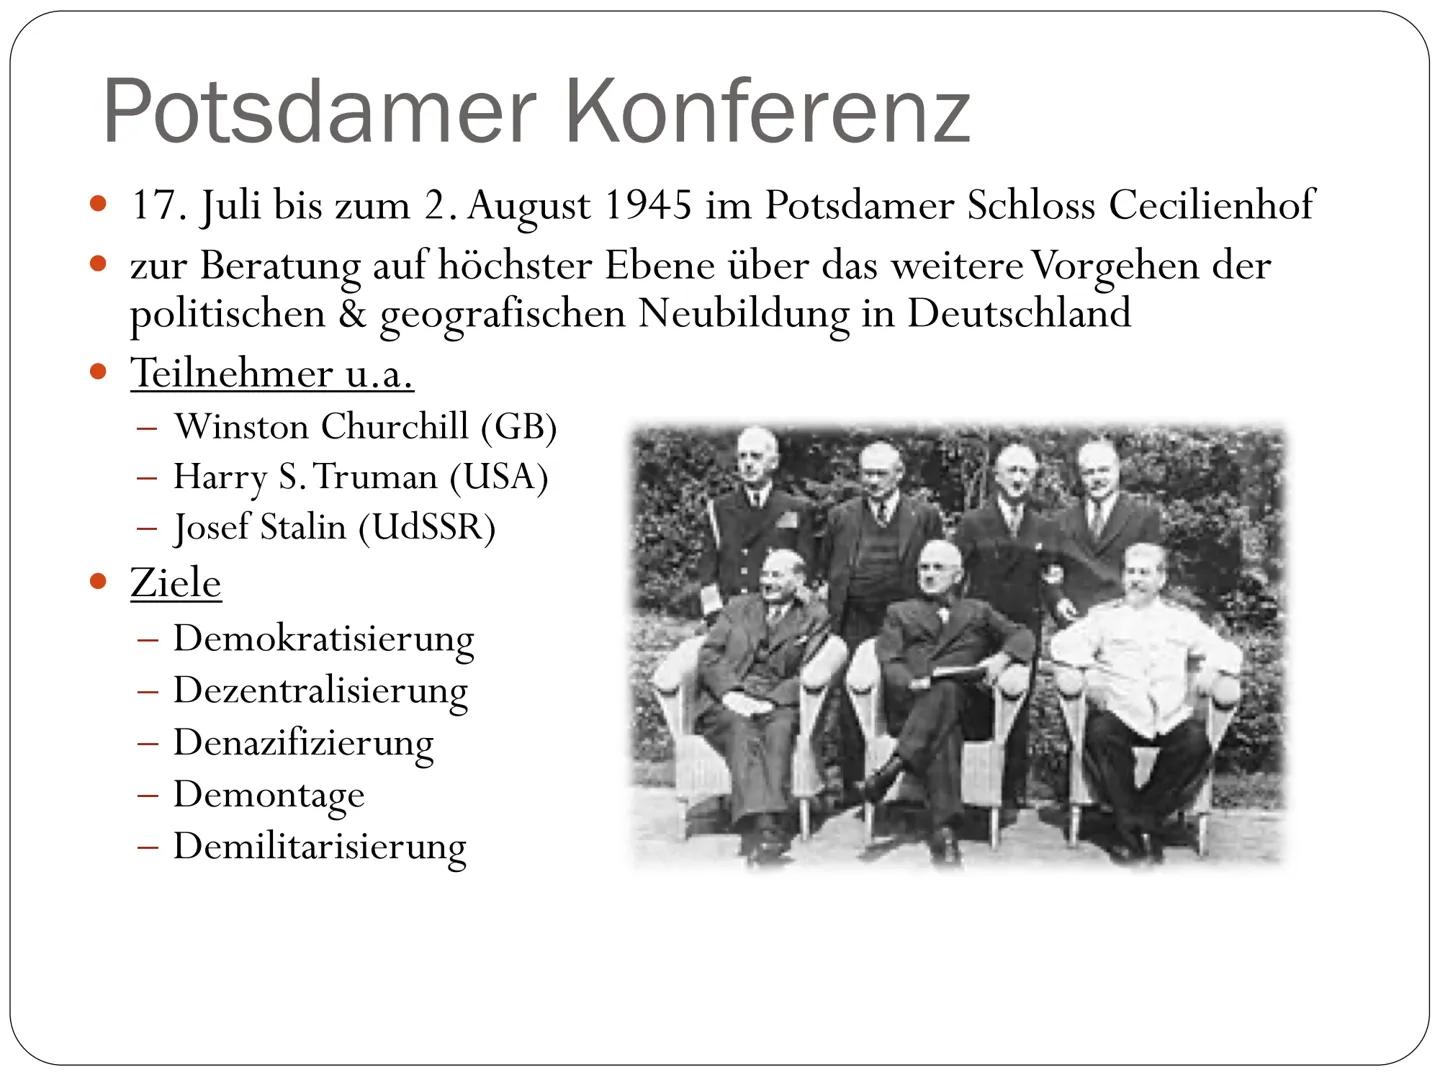 Deutschland nach dem 2. Weltkrieg
1945-1949 Gliederung
• Situation & Probleme nach dem 2.
Weltkrieg
Übernahme durch die Alliierten
• Potsdam